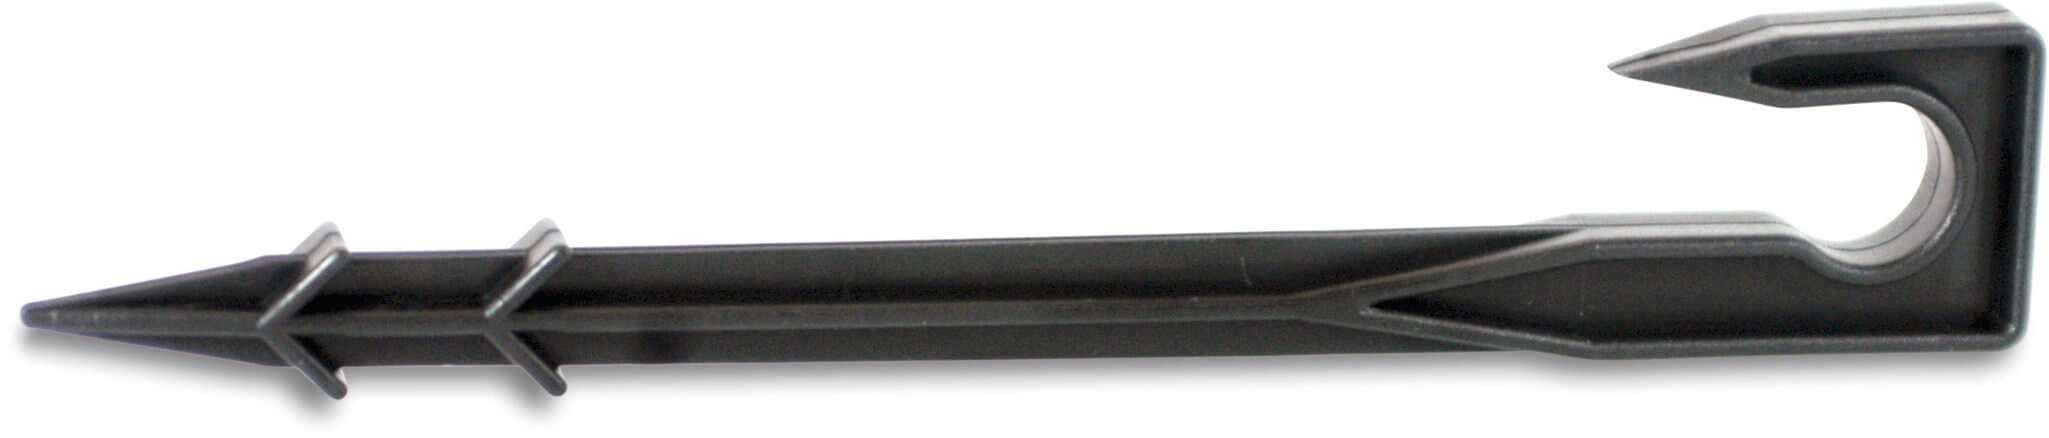 PE buis grondklem kunststof 16-20 mm zwart